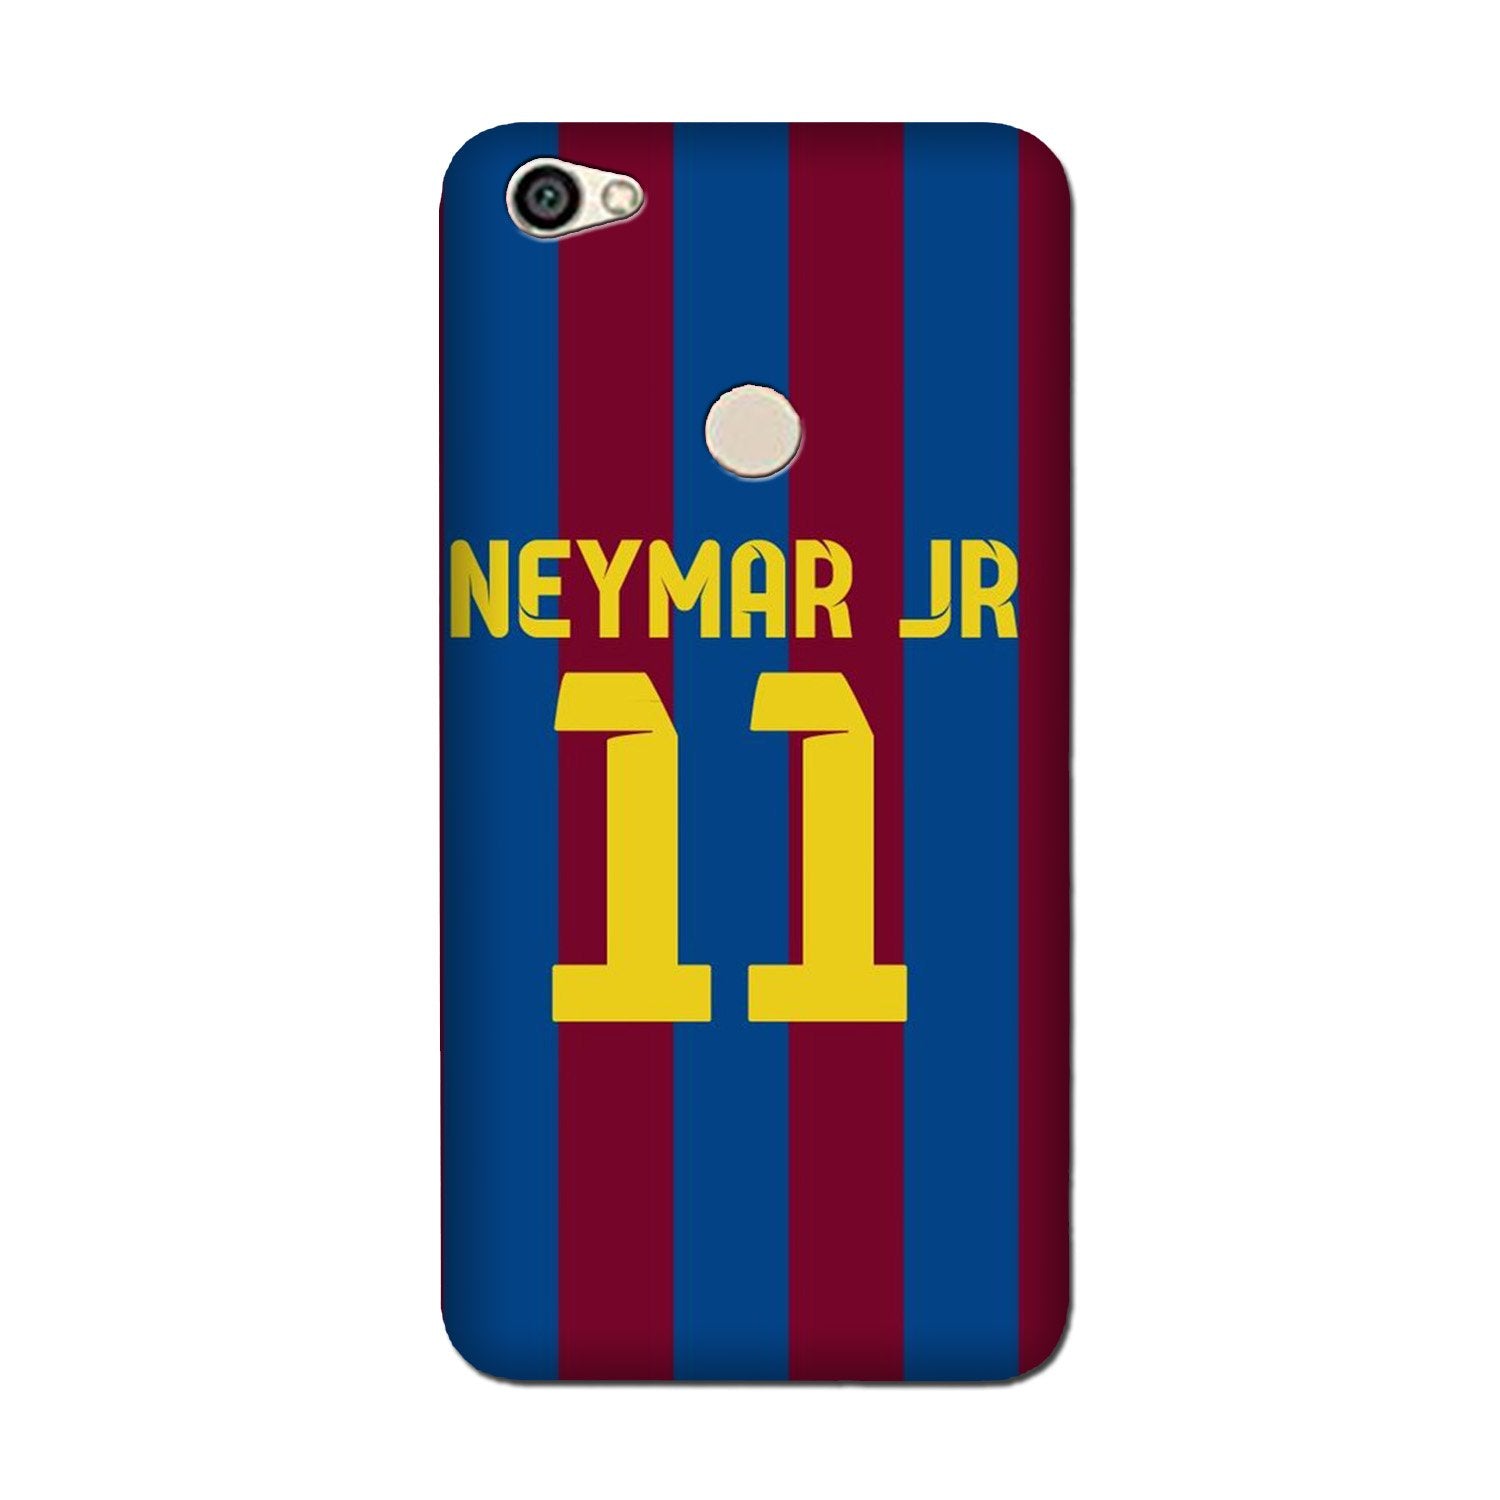 Neymar Jr Case for Vivo Y83/ Y81(Design - 162)